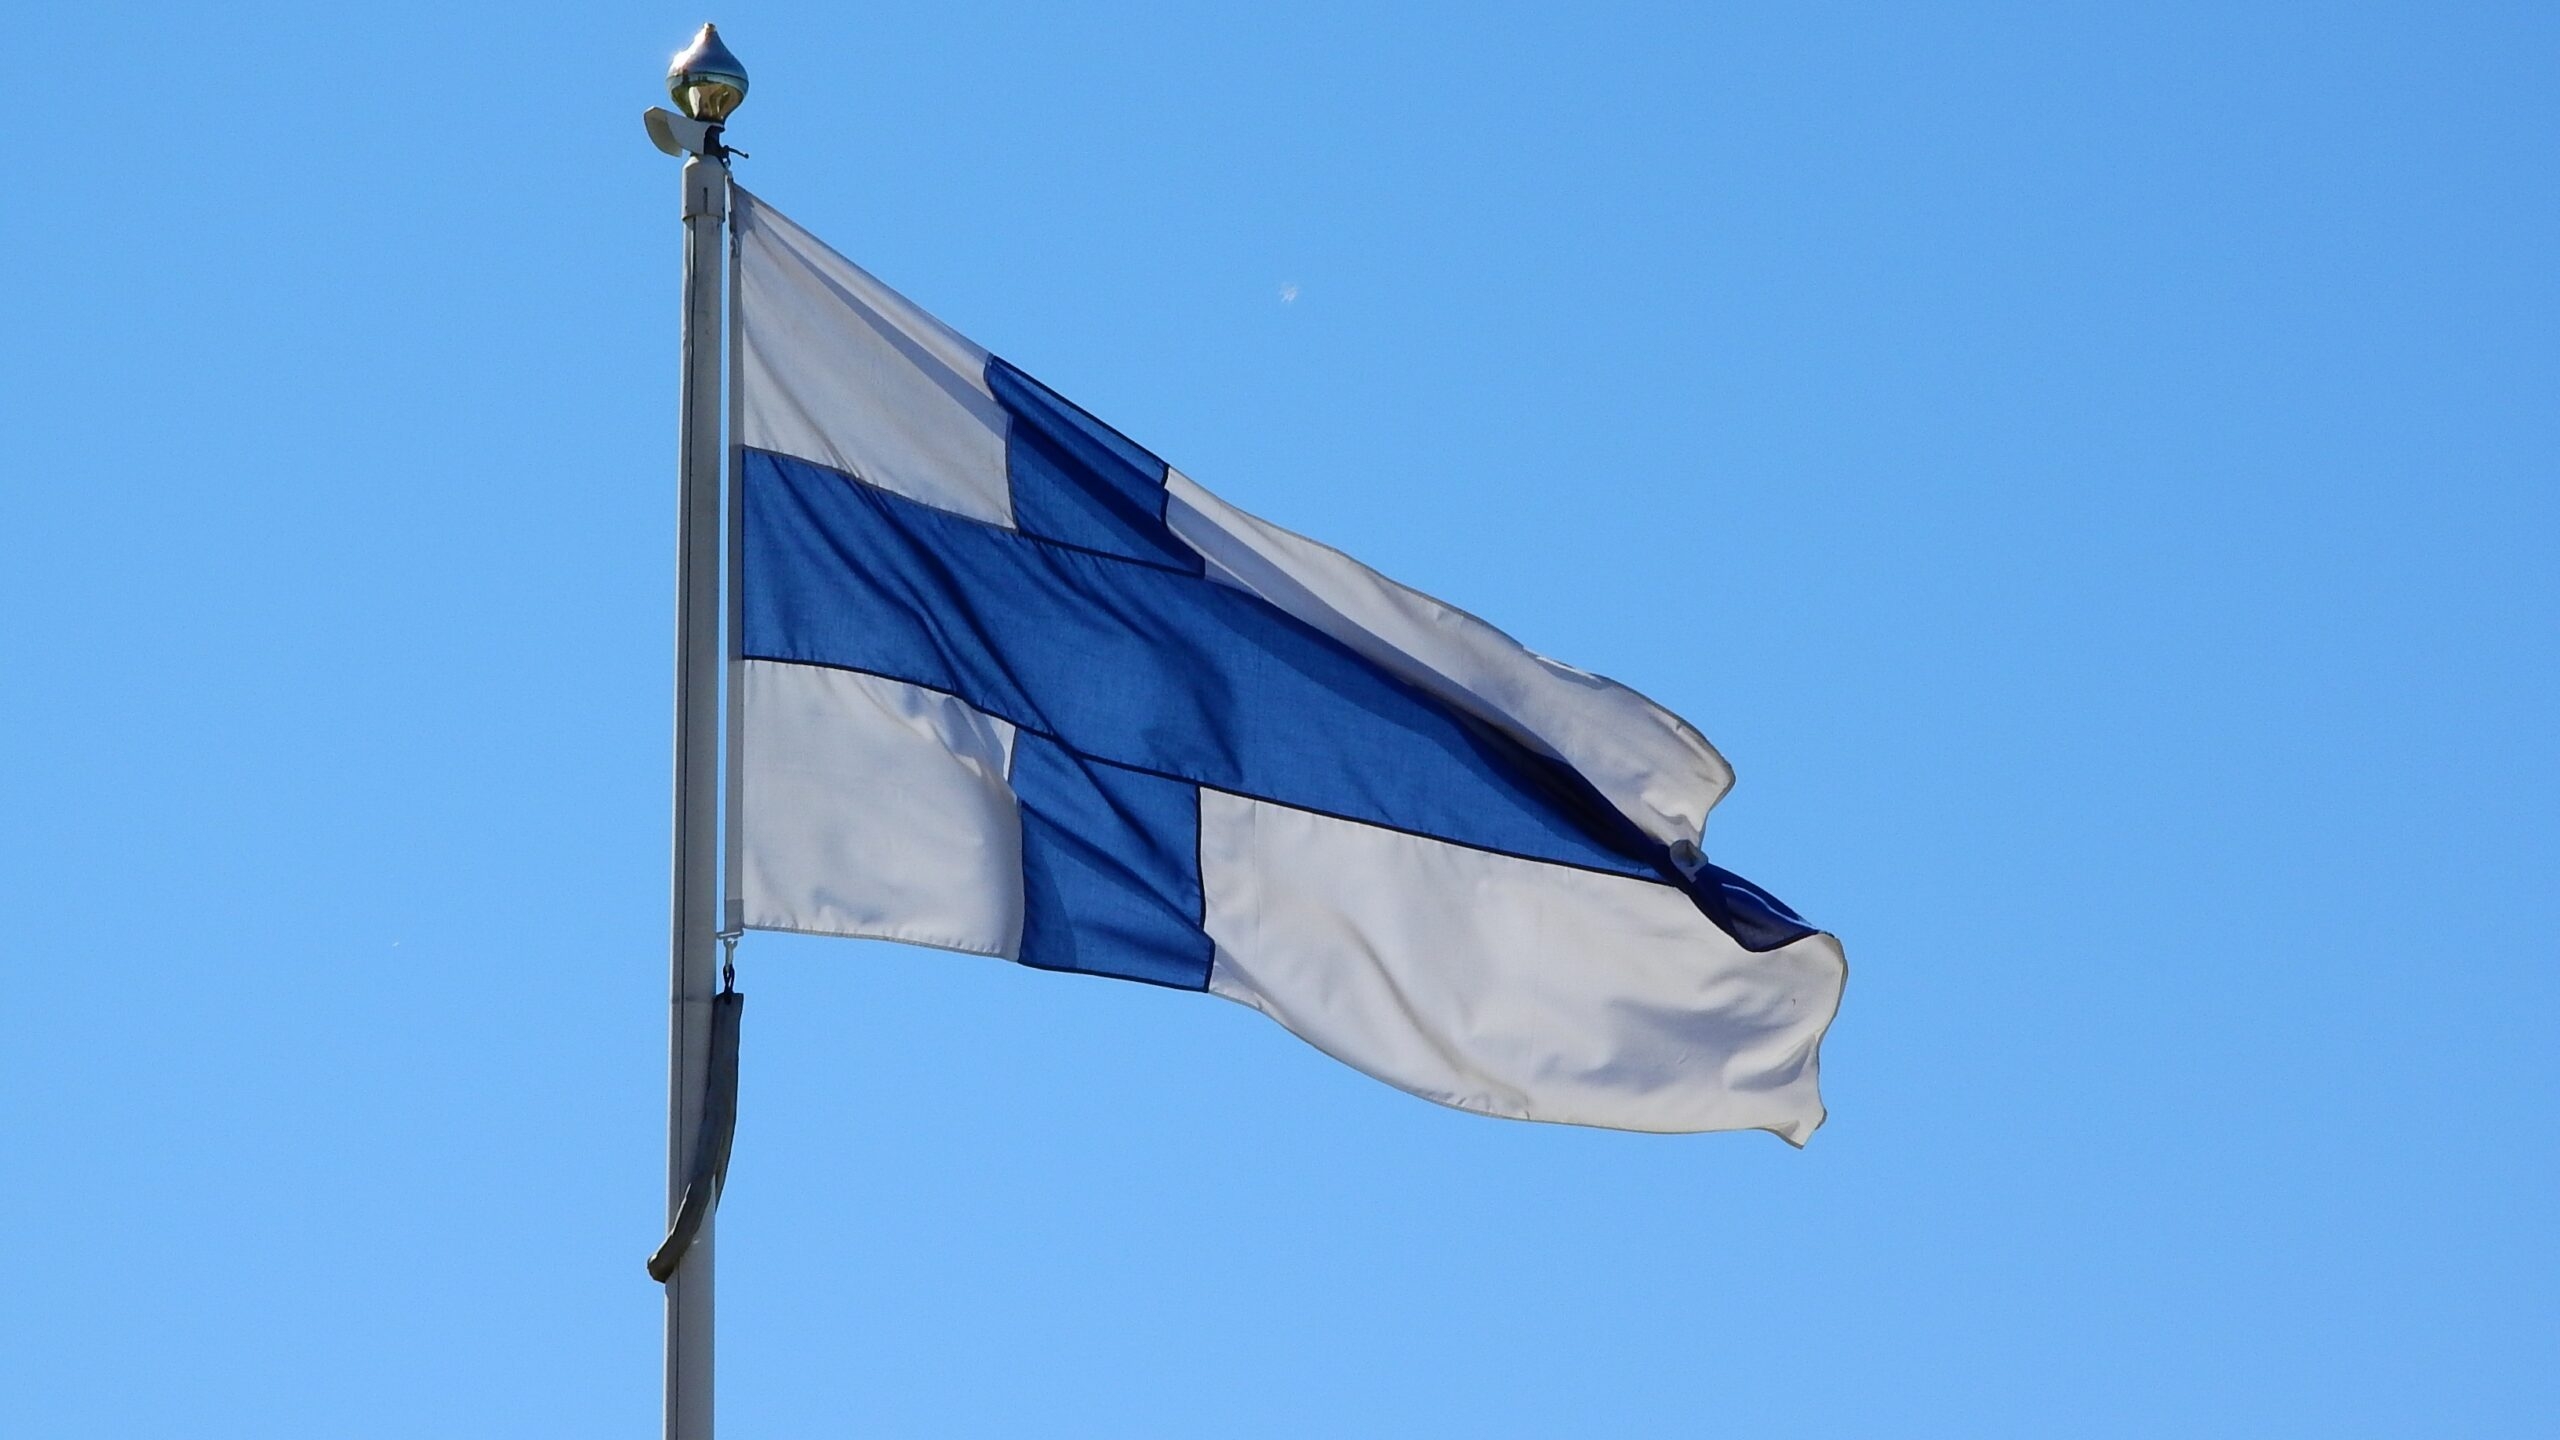 Жители восточной части Финляндии испытывают трудности из-за разрыва связей с Россией